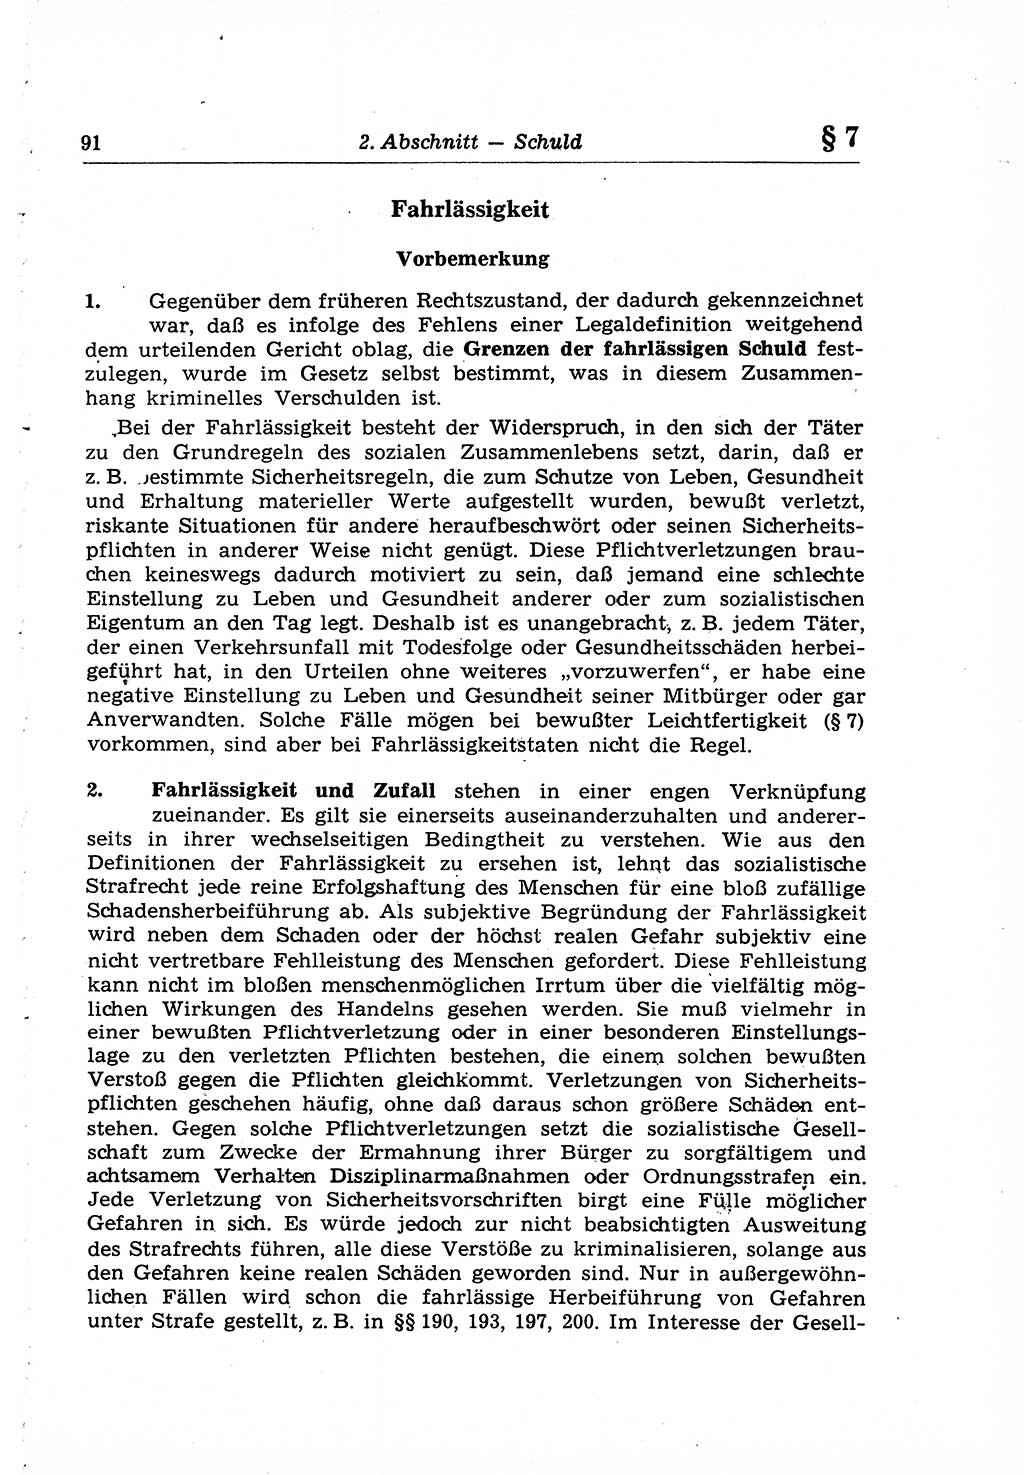 Strafrecht der Deutschen Demokratischen Republik (DDR), Lehrkommentar zum Strafgesetzbuch (StGB), Allgemeiner Teil 1969, Seite 91 (Strafr. DDR Lehrkomm. StGB AT 1969, S. 91)